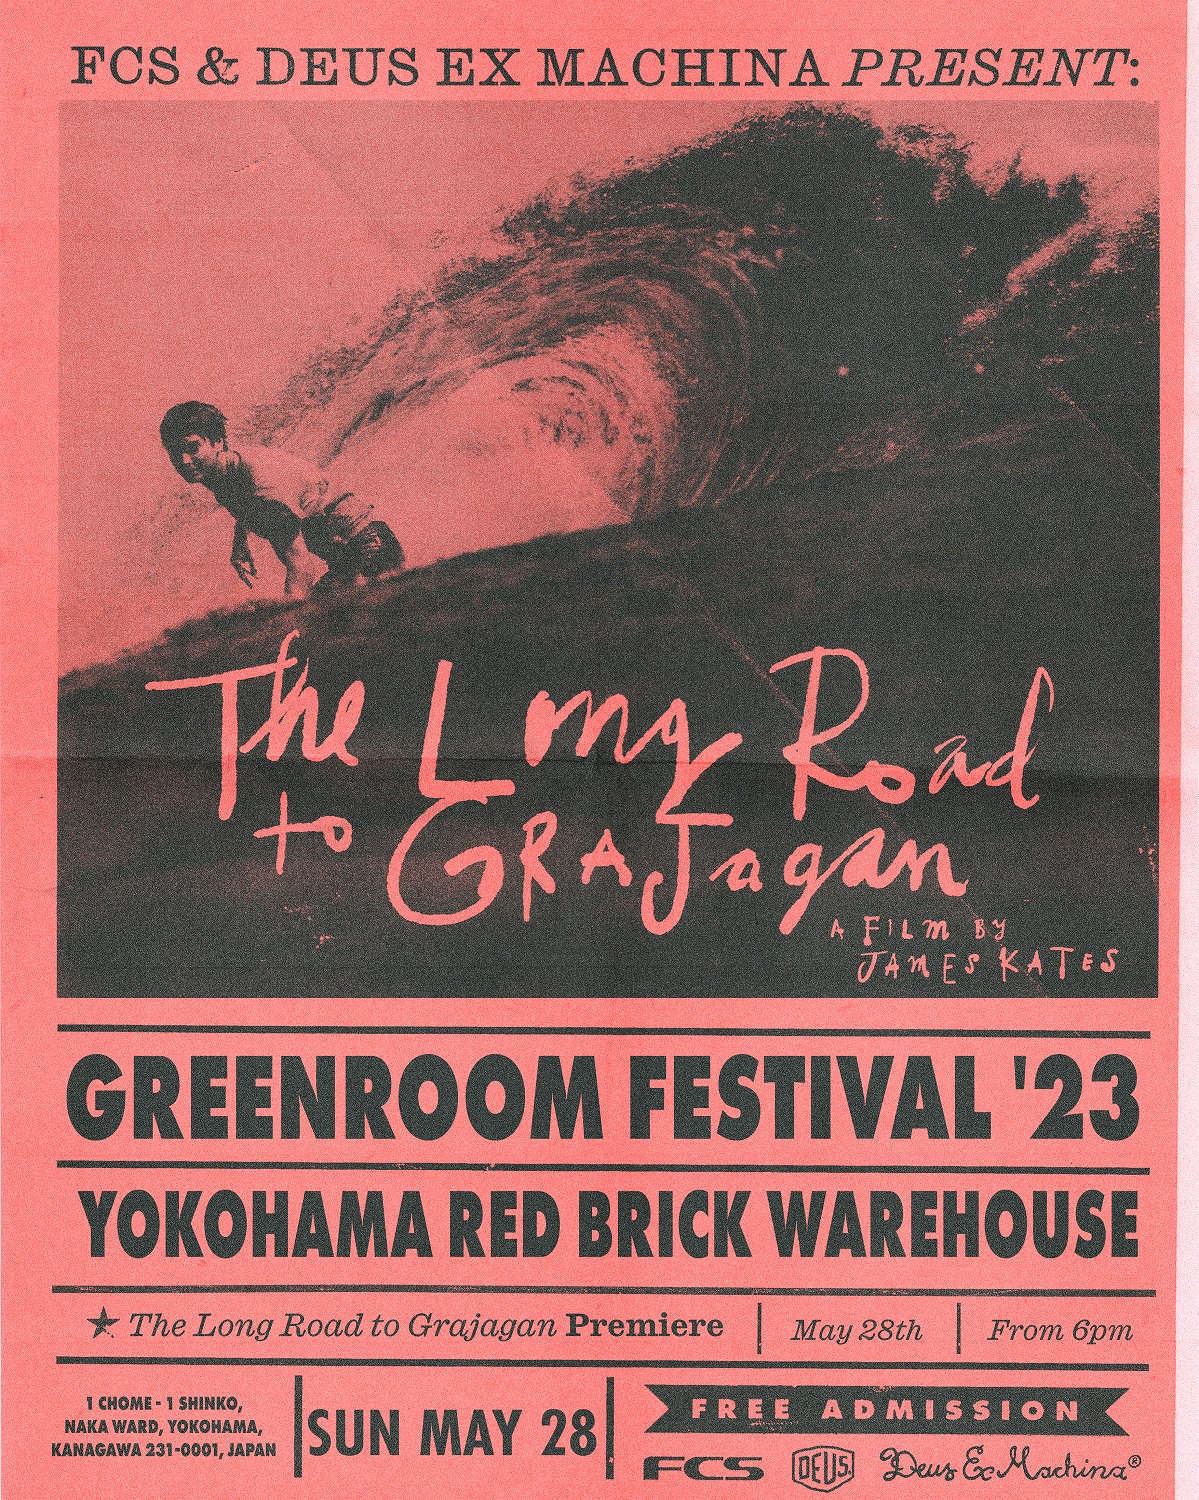 FCS & Deus Ex Machina Present 『The Long Road Grajagan』 at Greenroom Festival ’23